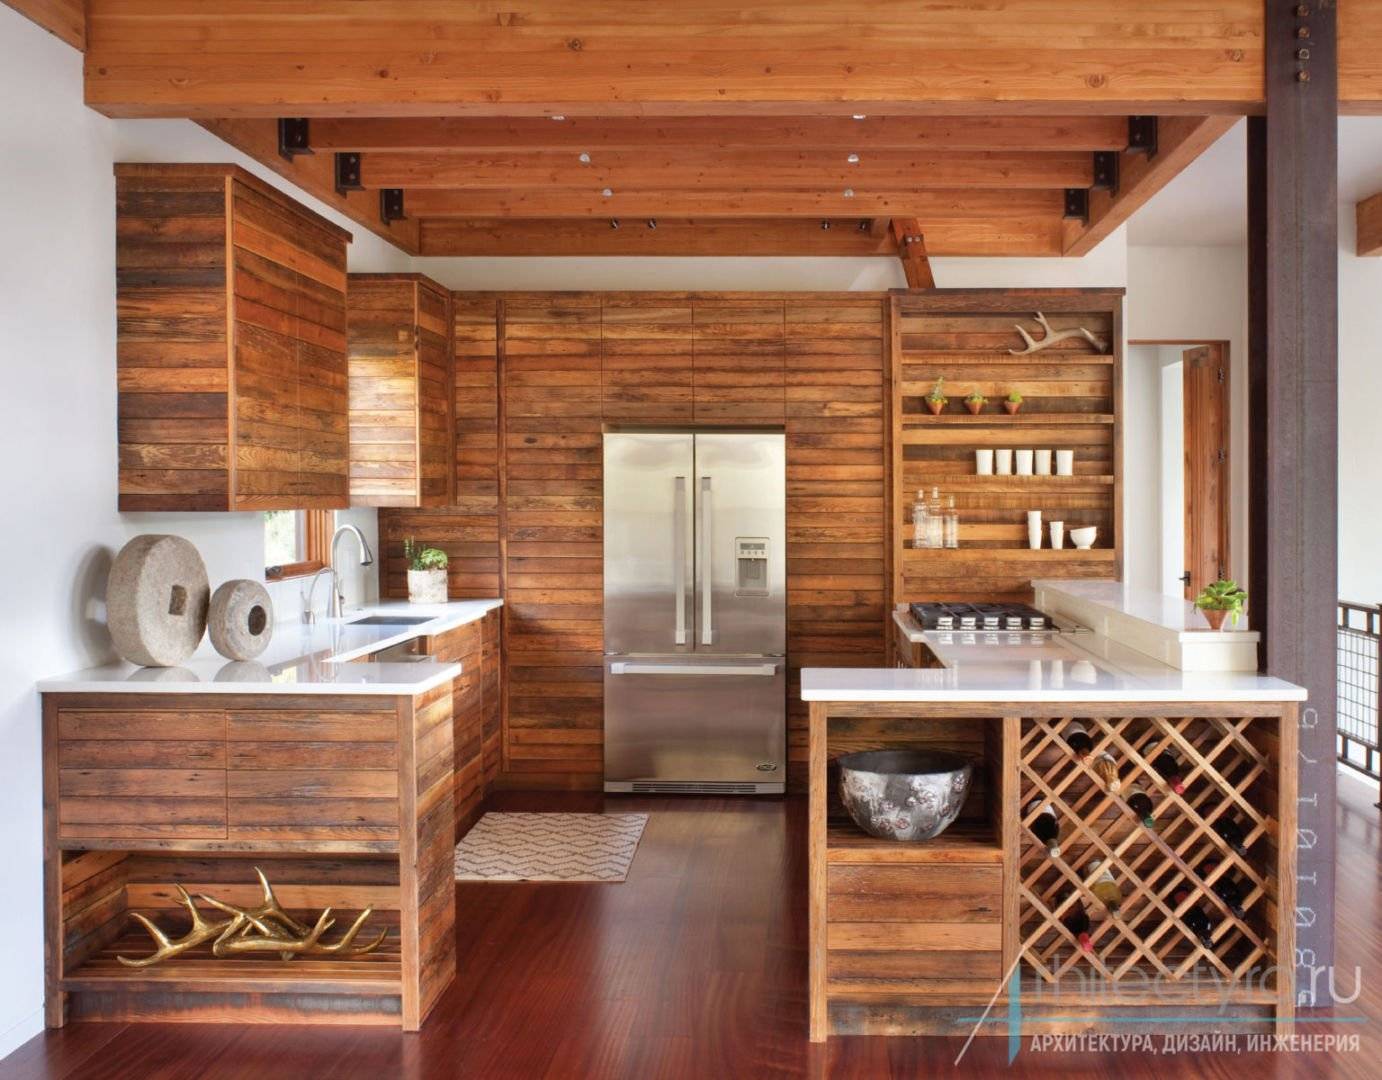 Кухня из дерева - кухня с деревянными фасадами из массива дерева, из натурального дерева и под дерево, фото.